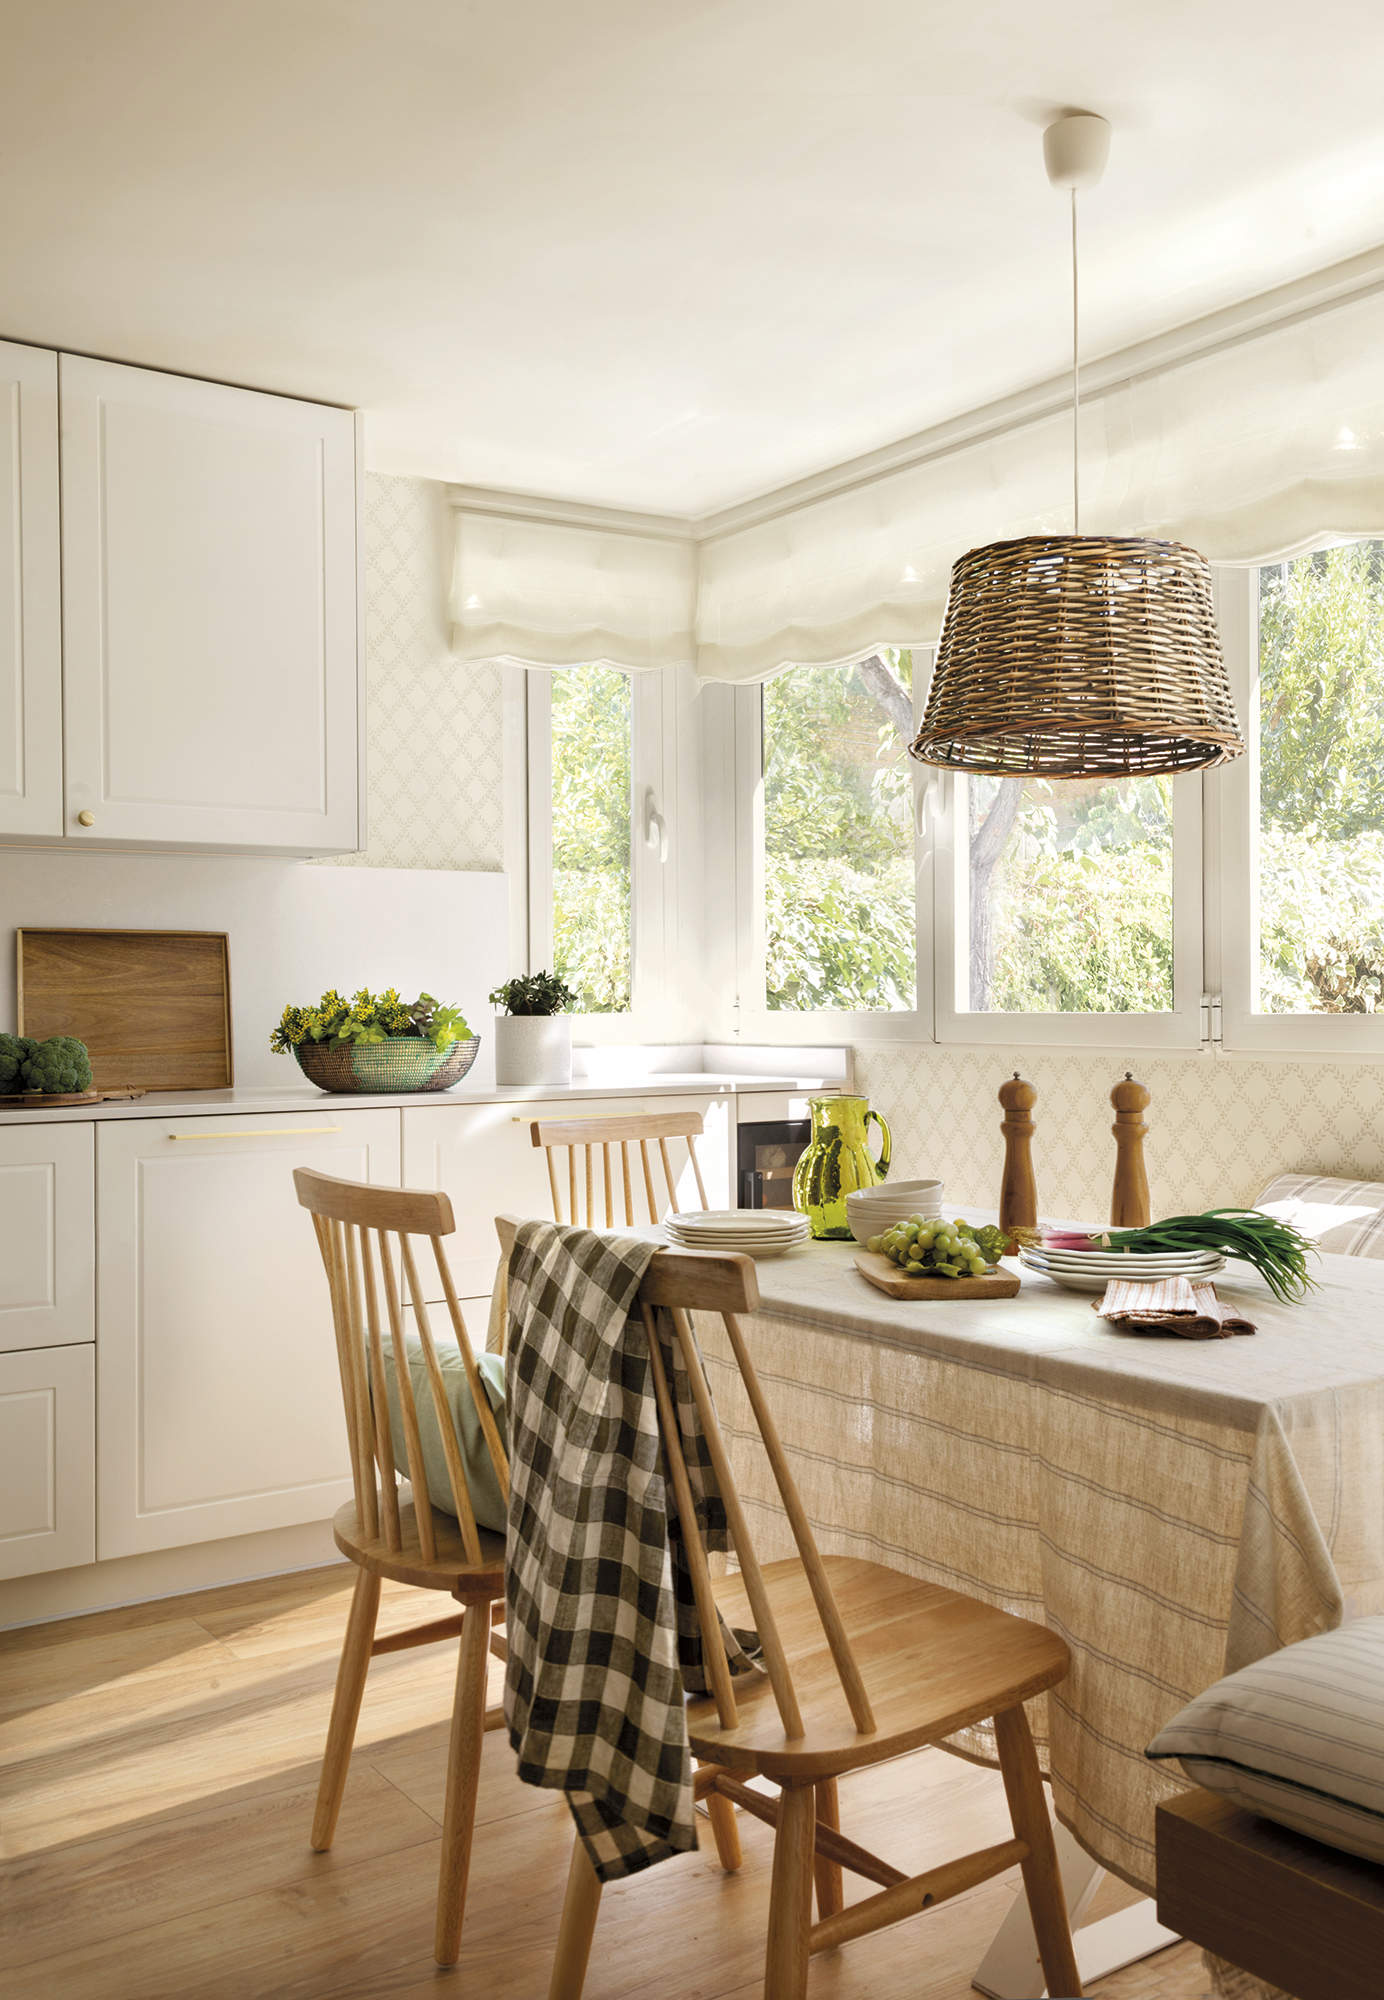 Cocina blanca con office y suelo de madera, ventanas con estor blanco, mesa con banco y silla de madera, lámpara de techo de fibra, mantel de lino a rayas